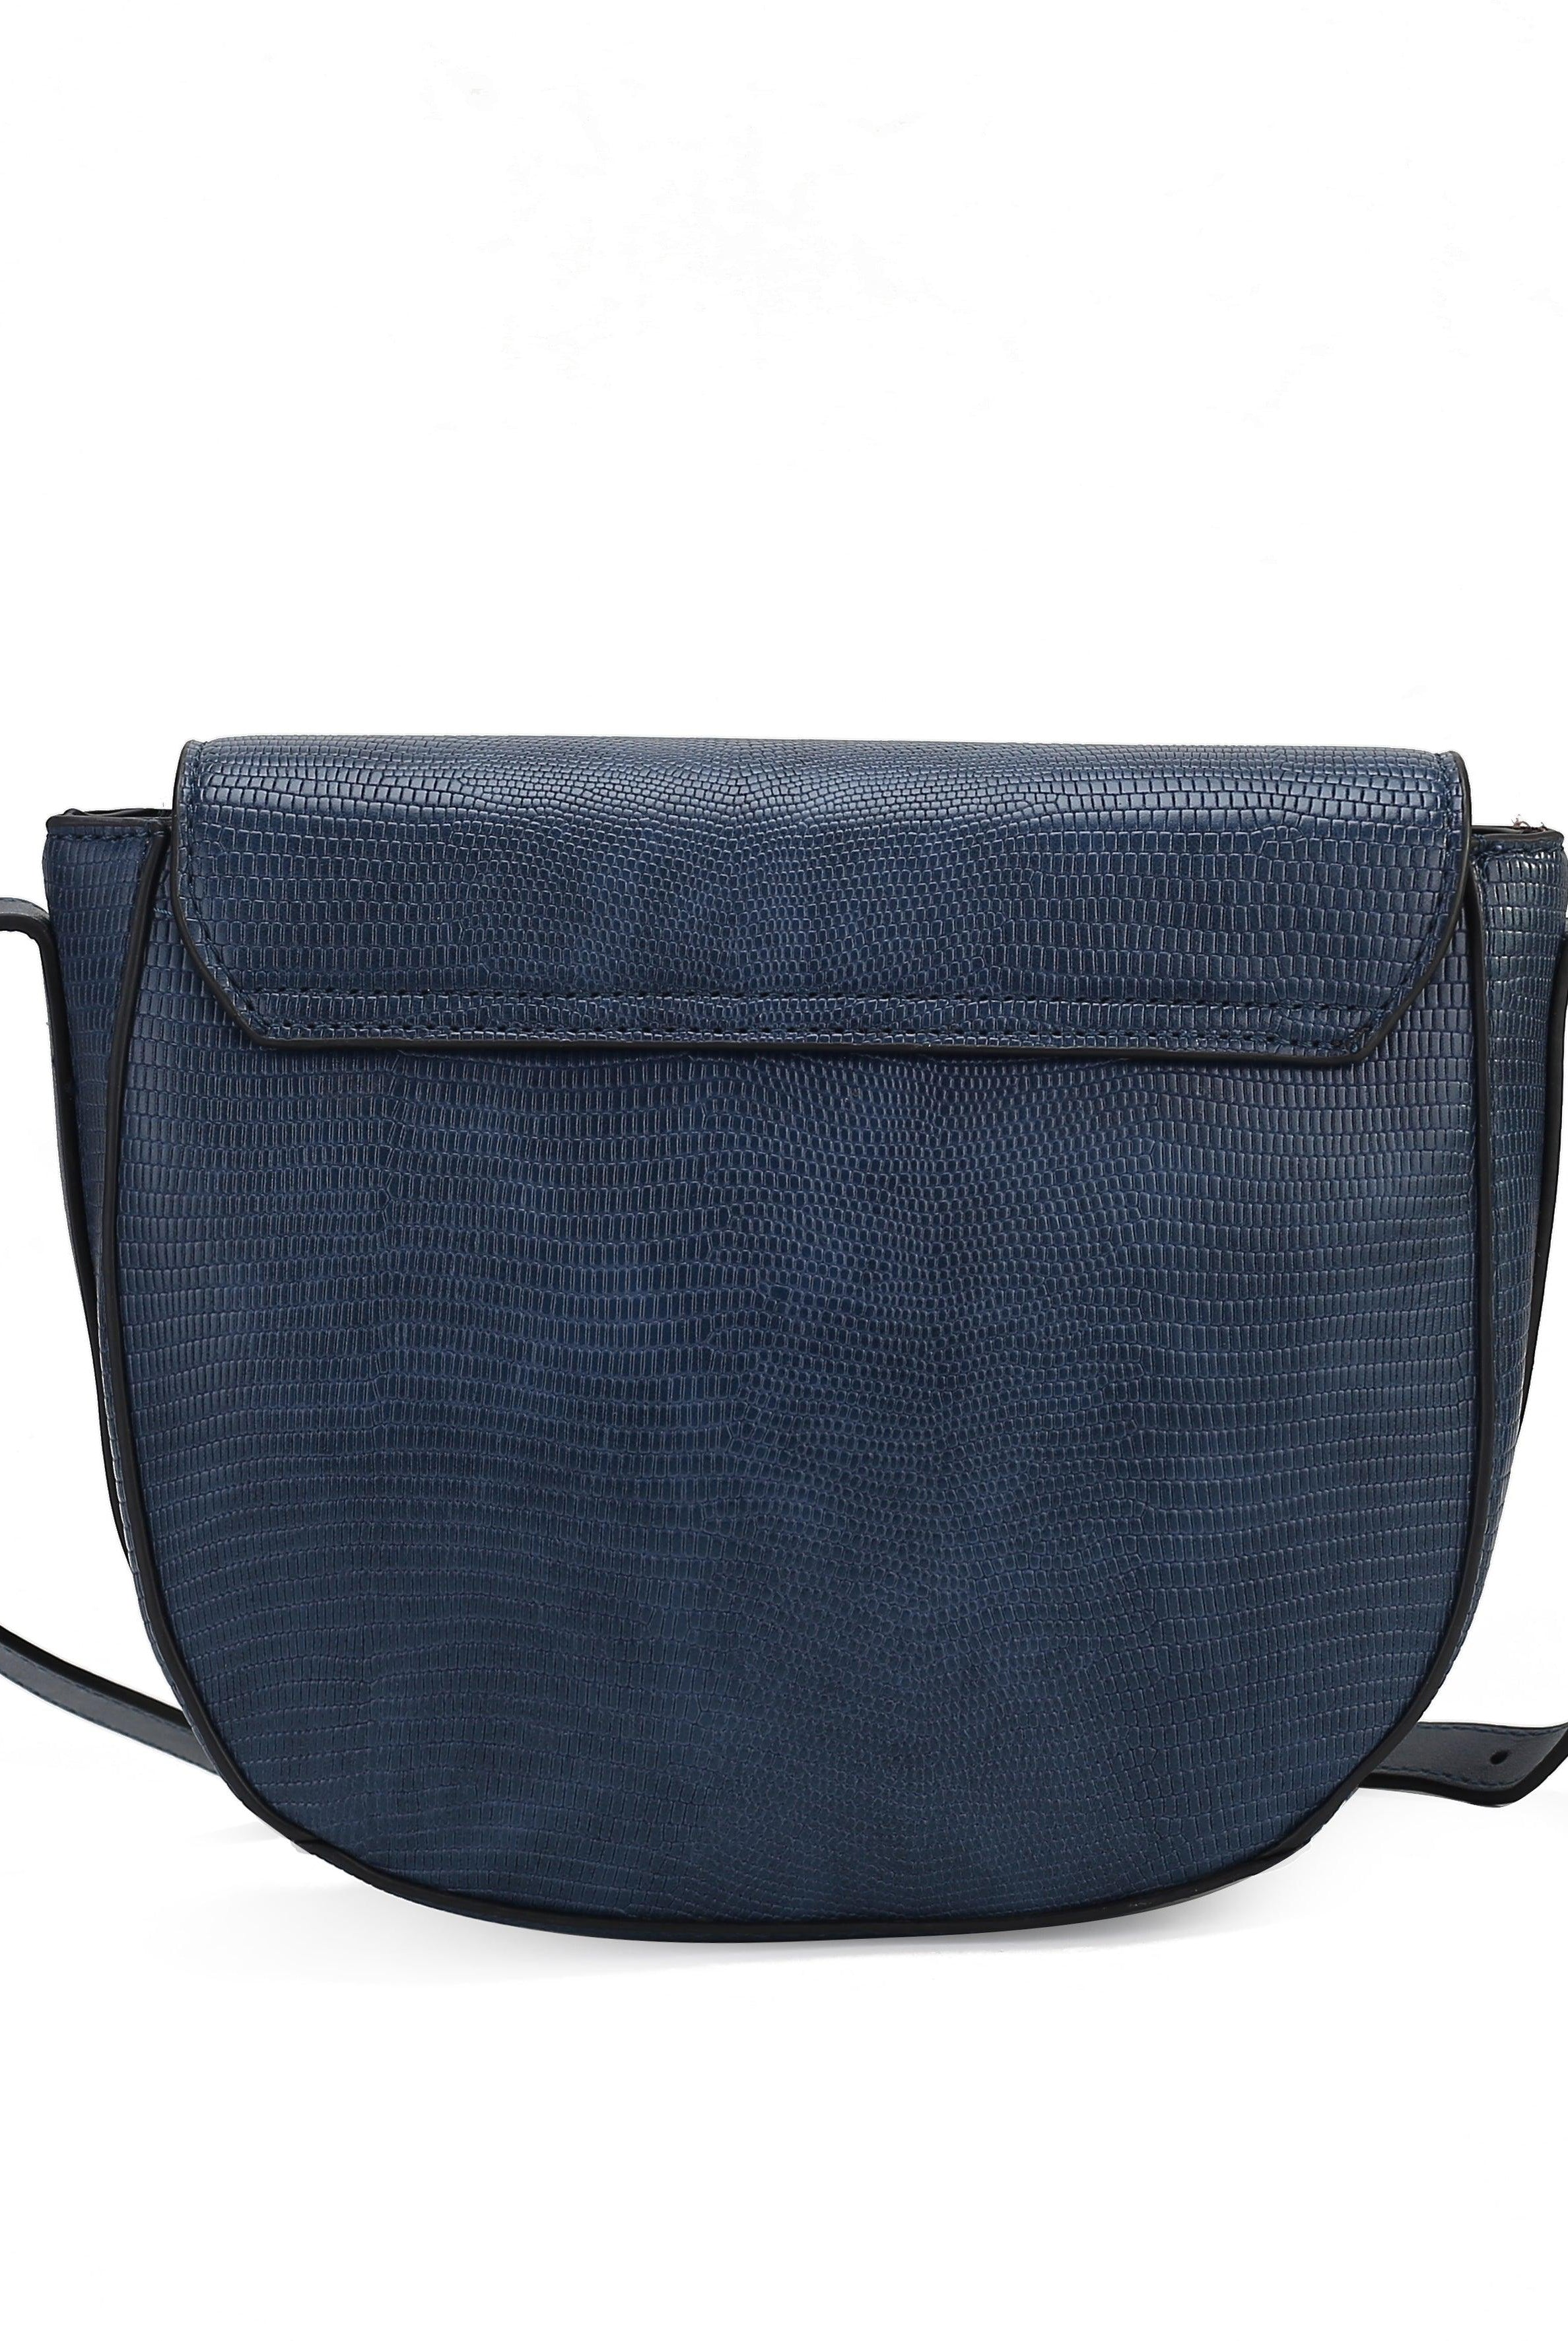 Wallets, Handbags & Accessories Adalyn Snake Embossed Vegan Leather Women Shoulder Handbag